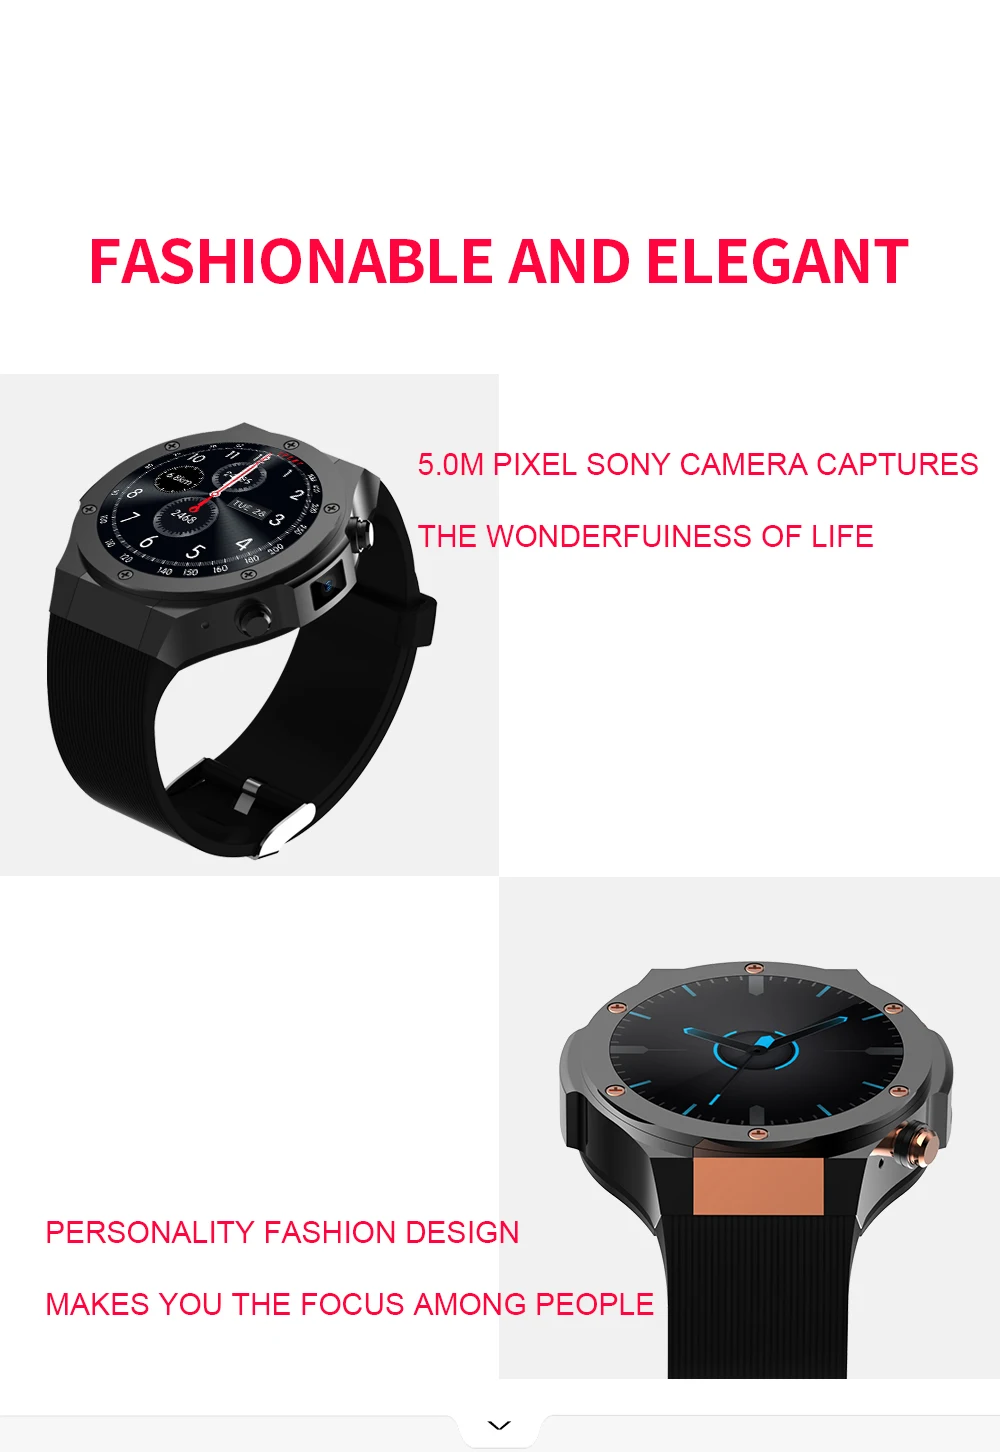 H2 3g Wifi gps Смарт-часы телефон 5MP камера четырехъядерный 1 ГБ ОЗУ 16 Гб ПЗУ пульсометр Шагомер Bluetooth модные спортивные умные часы